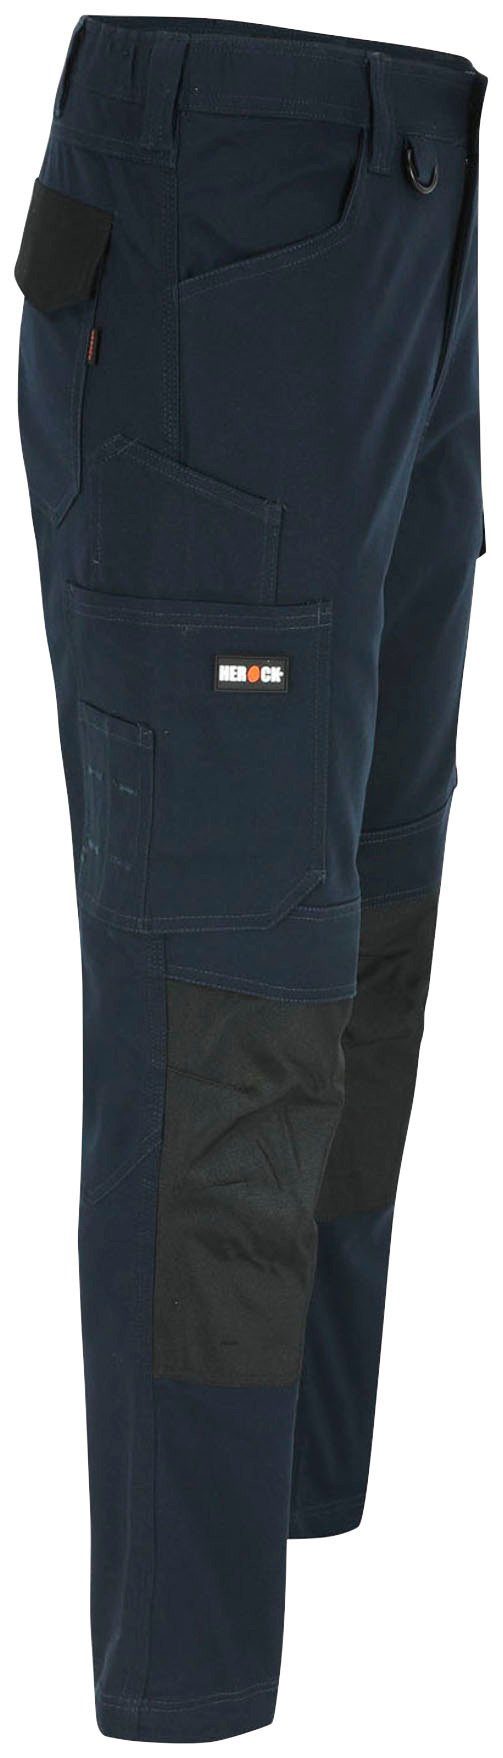 Herock Arbeitshose DERO Slim Fit wasserabweisend Passform, Multi-Pocket, marine 2-Wege-Stretch